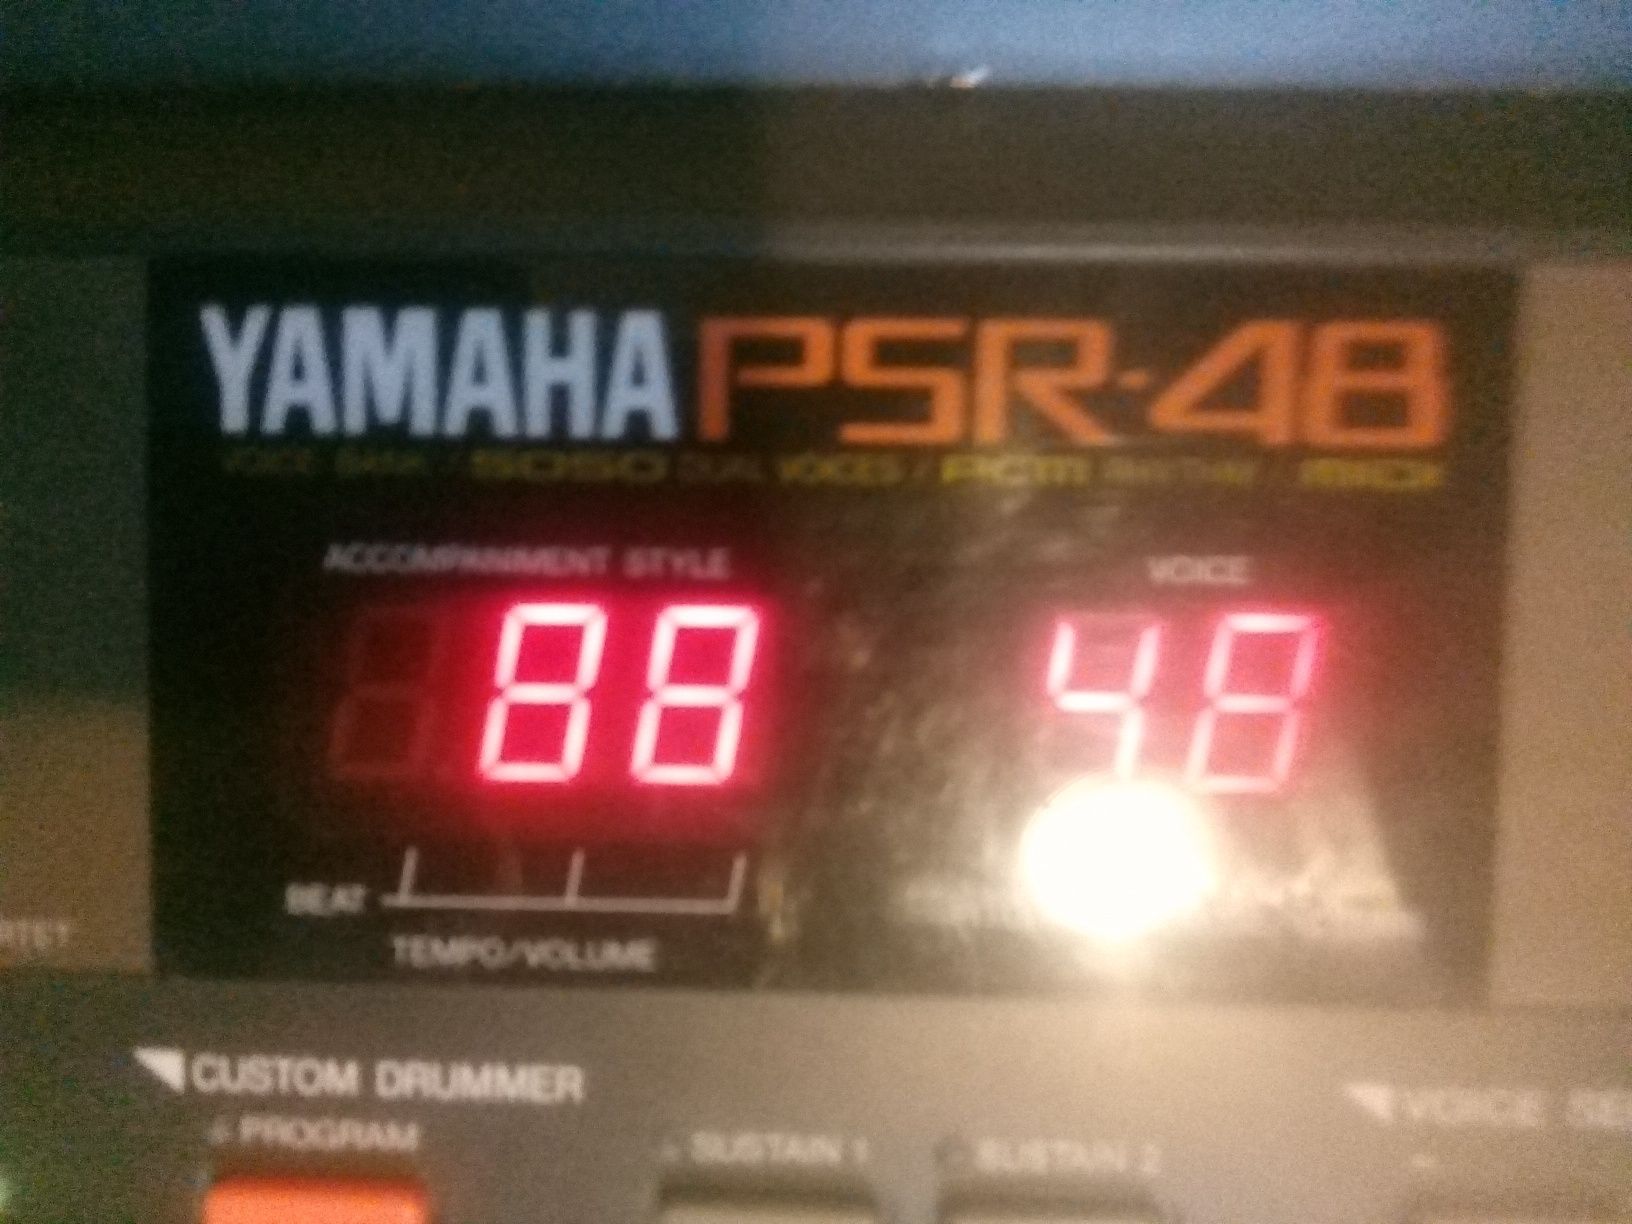 Yamaha psr 48  impecabila